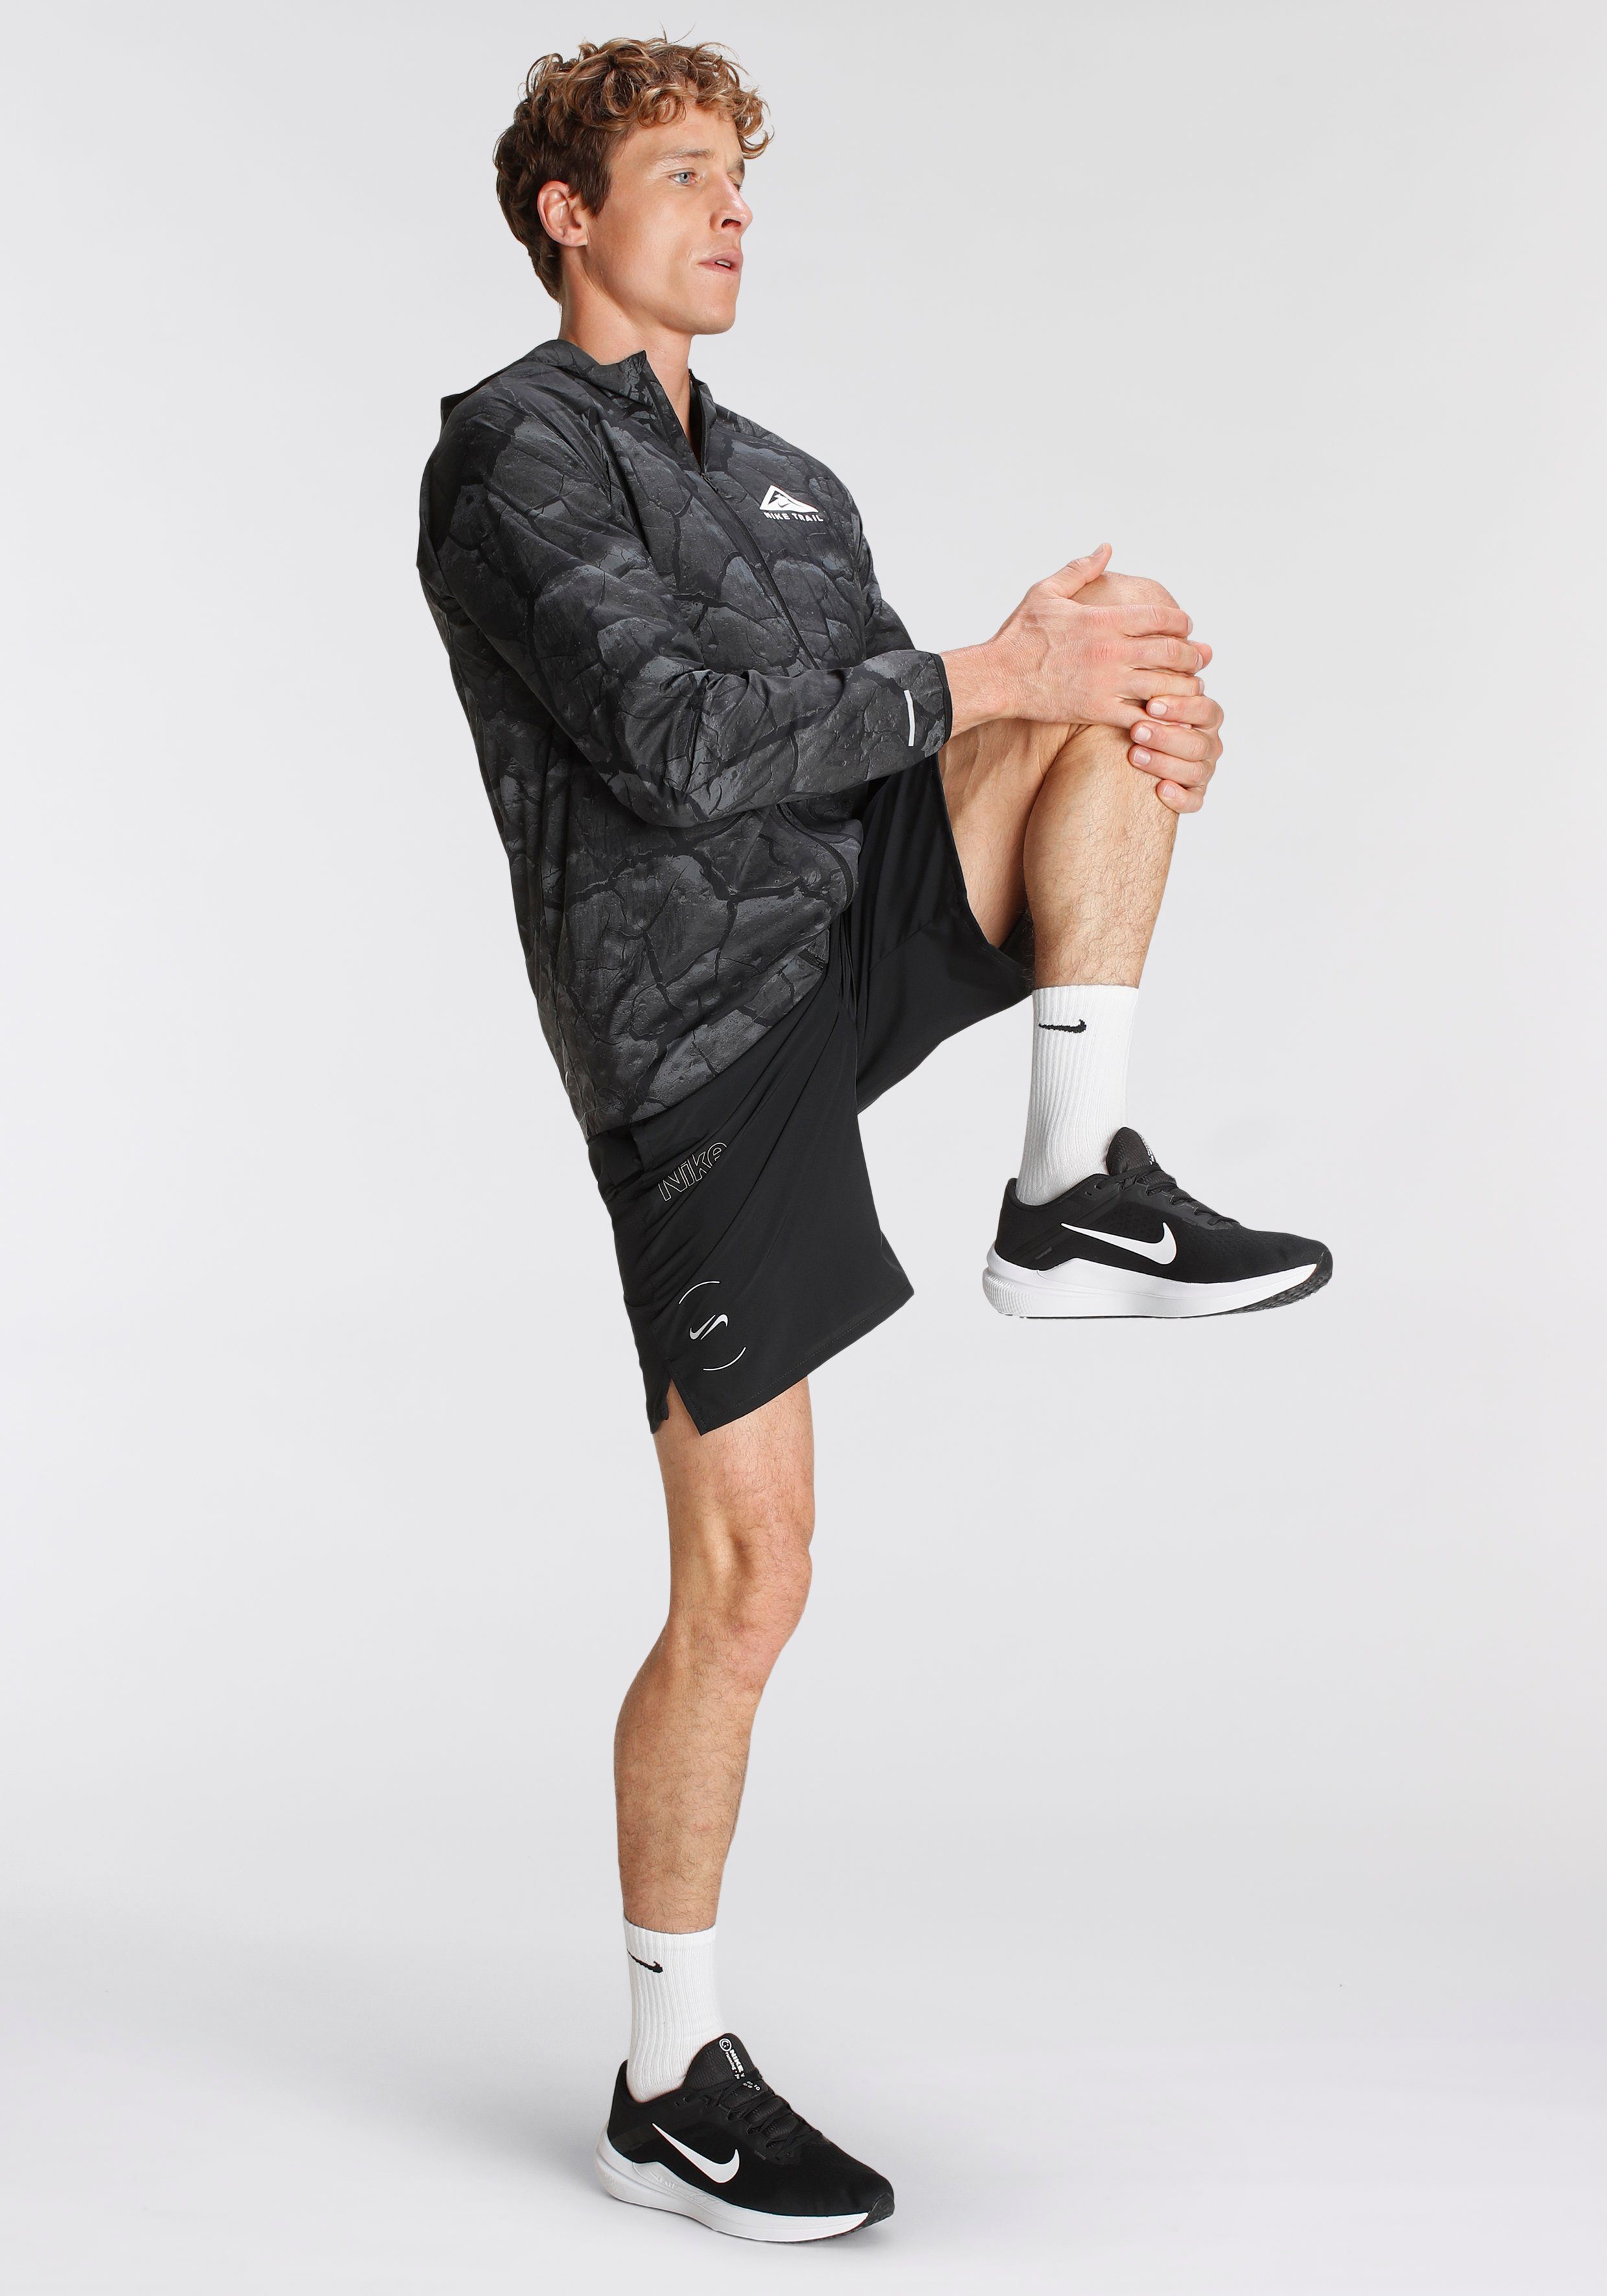 Laufjacke ALLOVER Nike LIGHTWEIGHT RUNNING TRAIL JACKET MEN'S PRINT